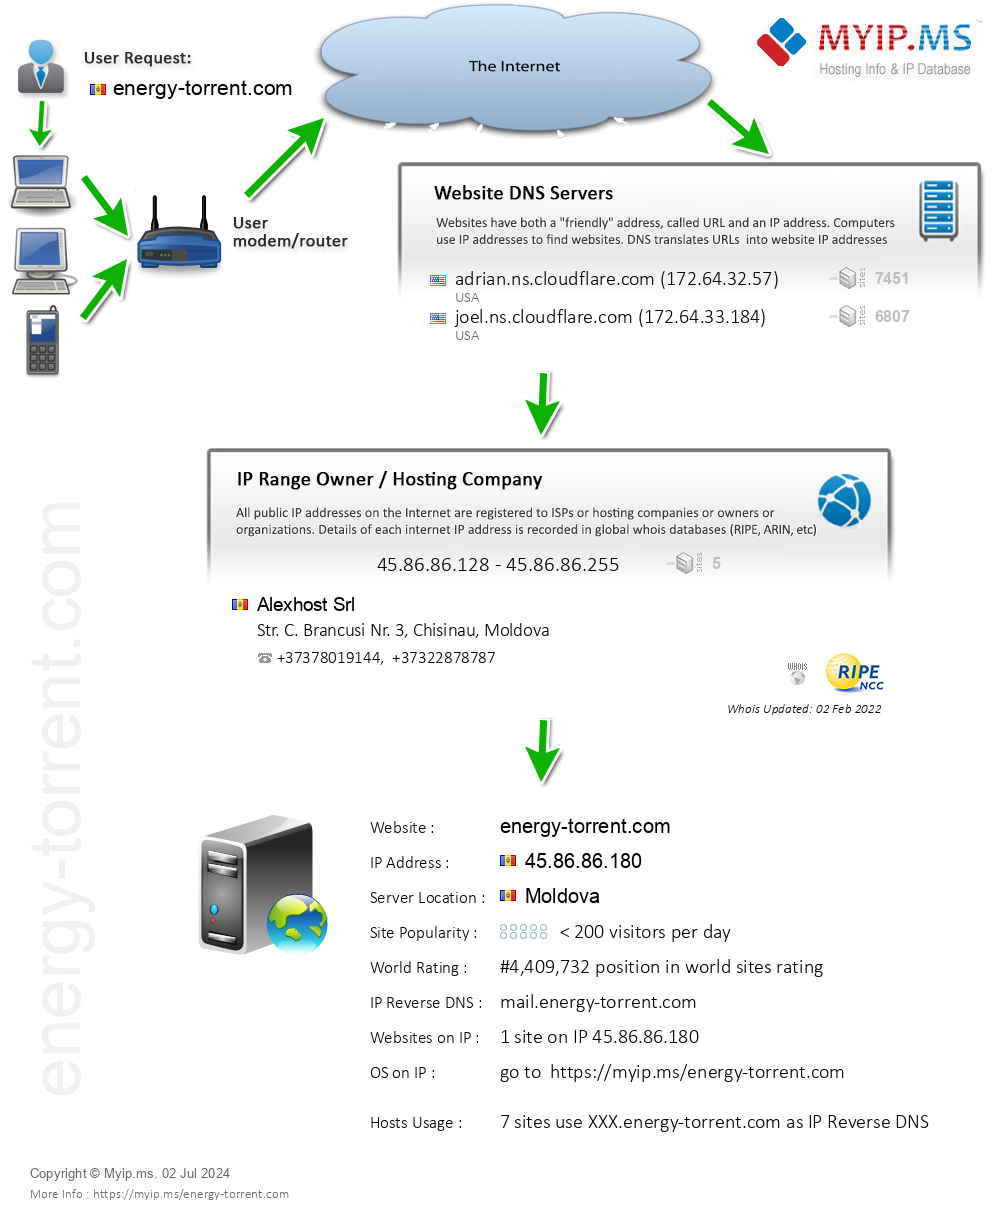 Energy-torrent.com - Website Hosting Visual IP Diagram